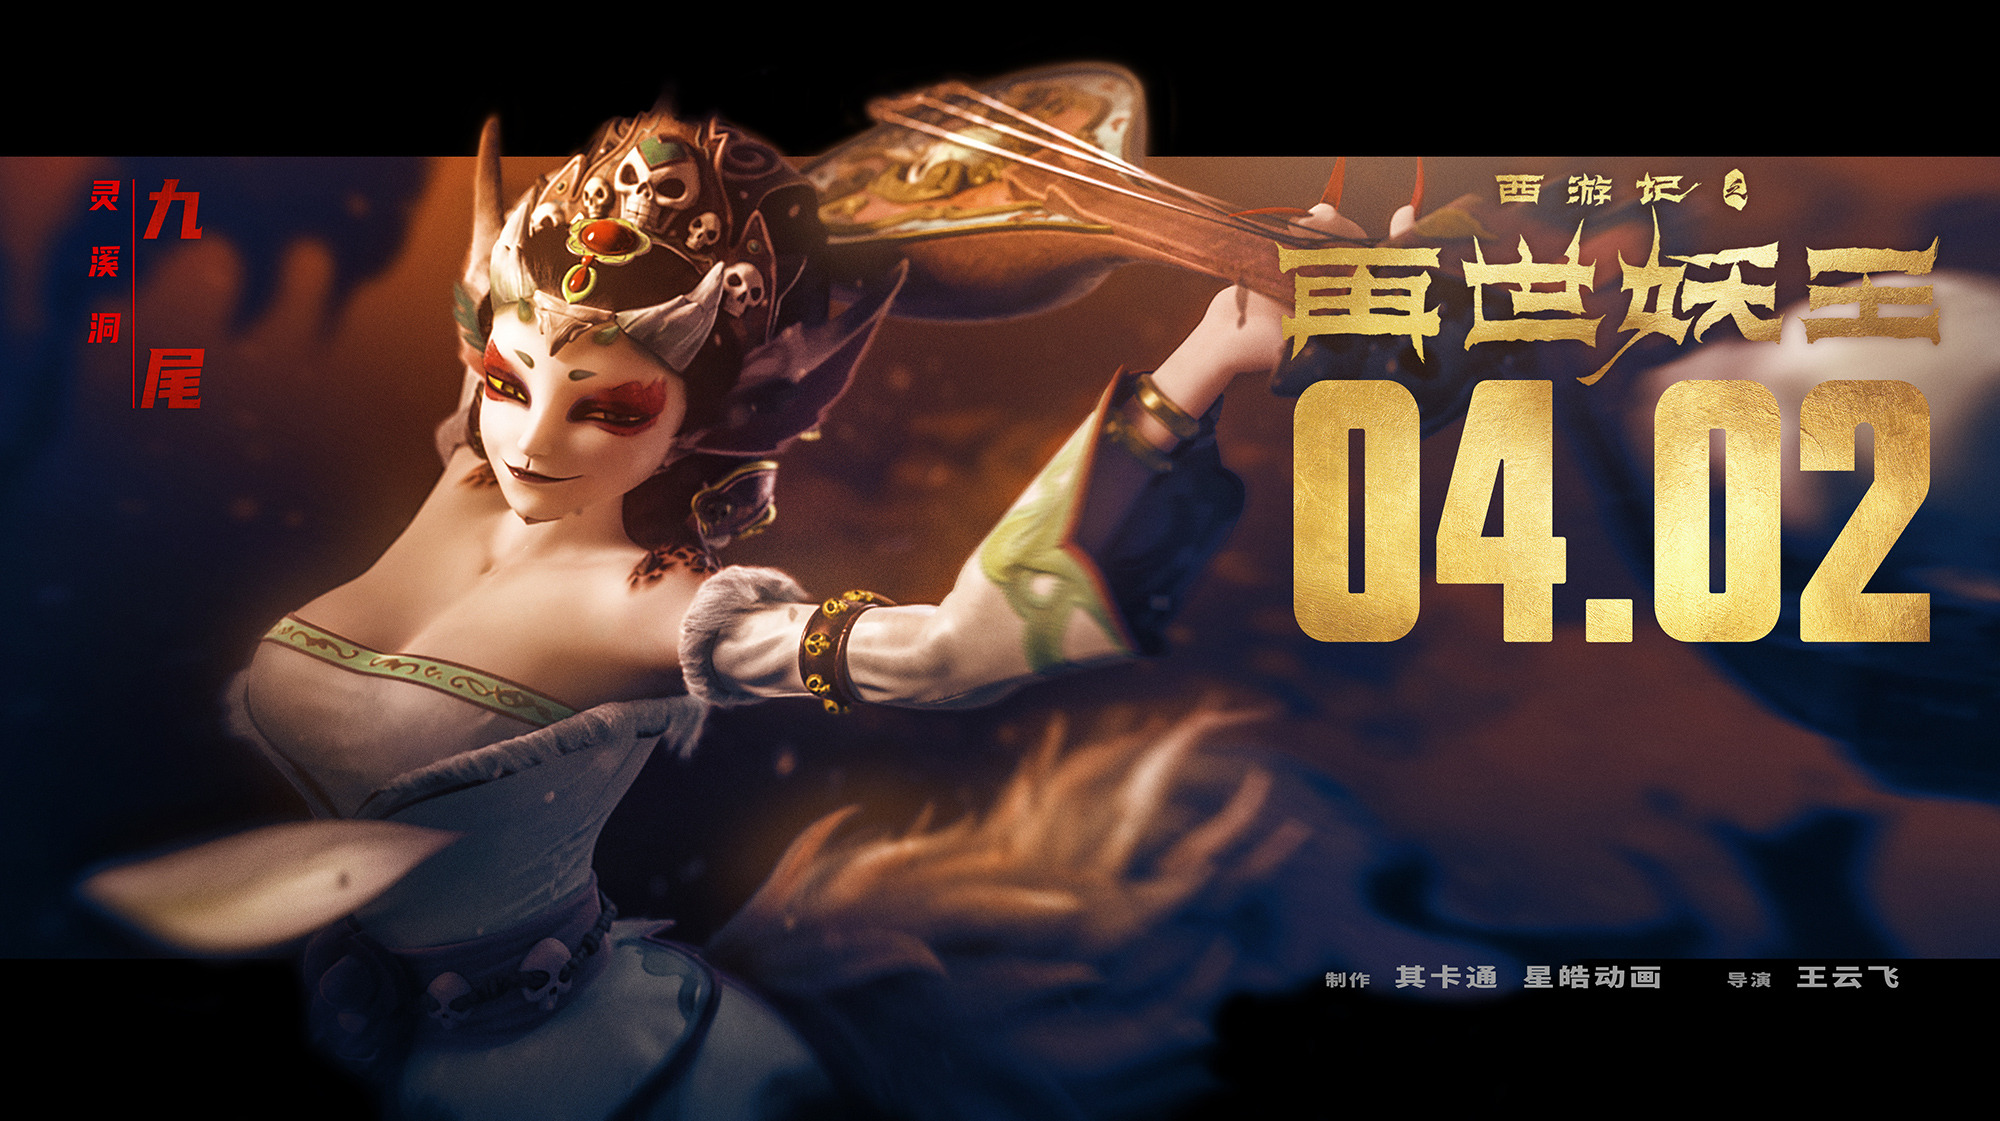 Mega Sized Movie Poster Image for Xi You Ji Zhi Zai Shi Yao Wang (#8 of 21)